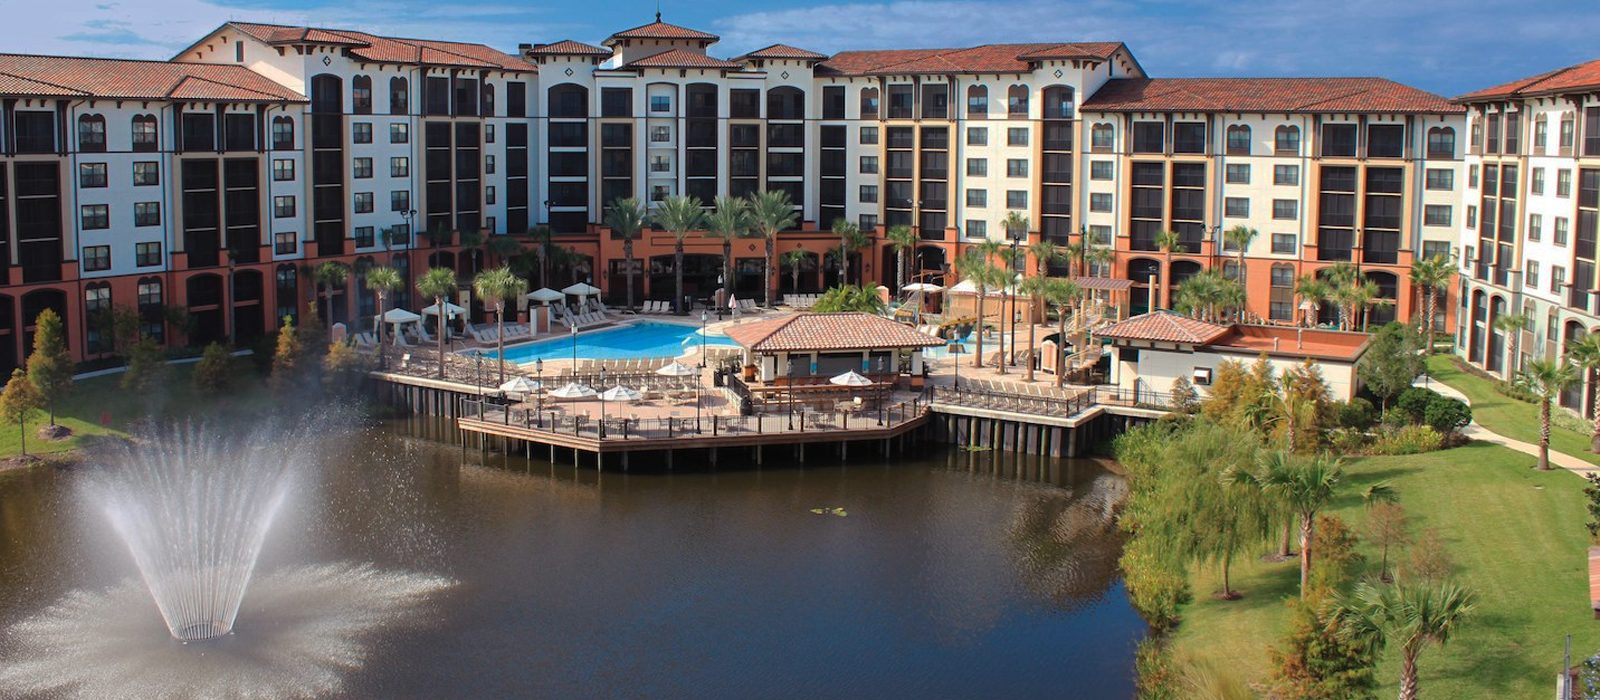 Luxury Orlando Holiday Packages Sheraton Vistana Villages Resort Villas Header